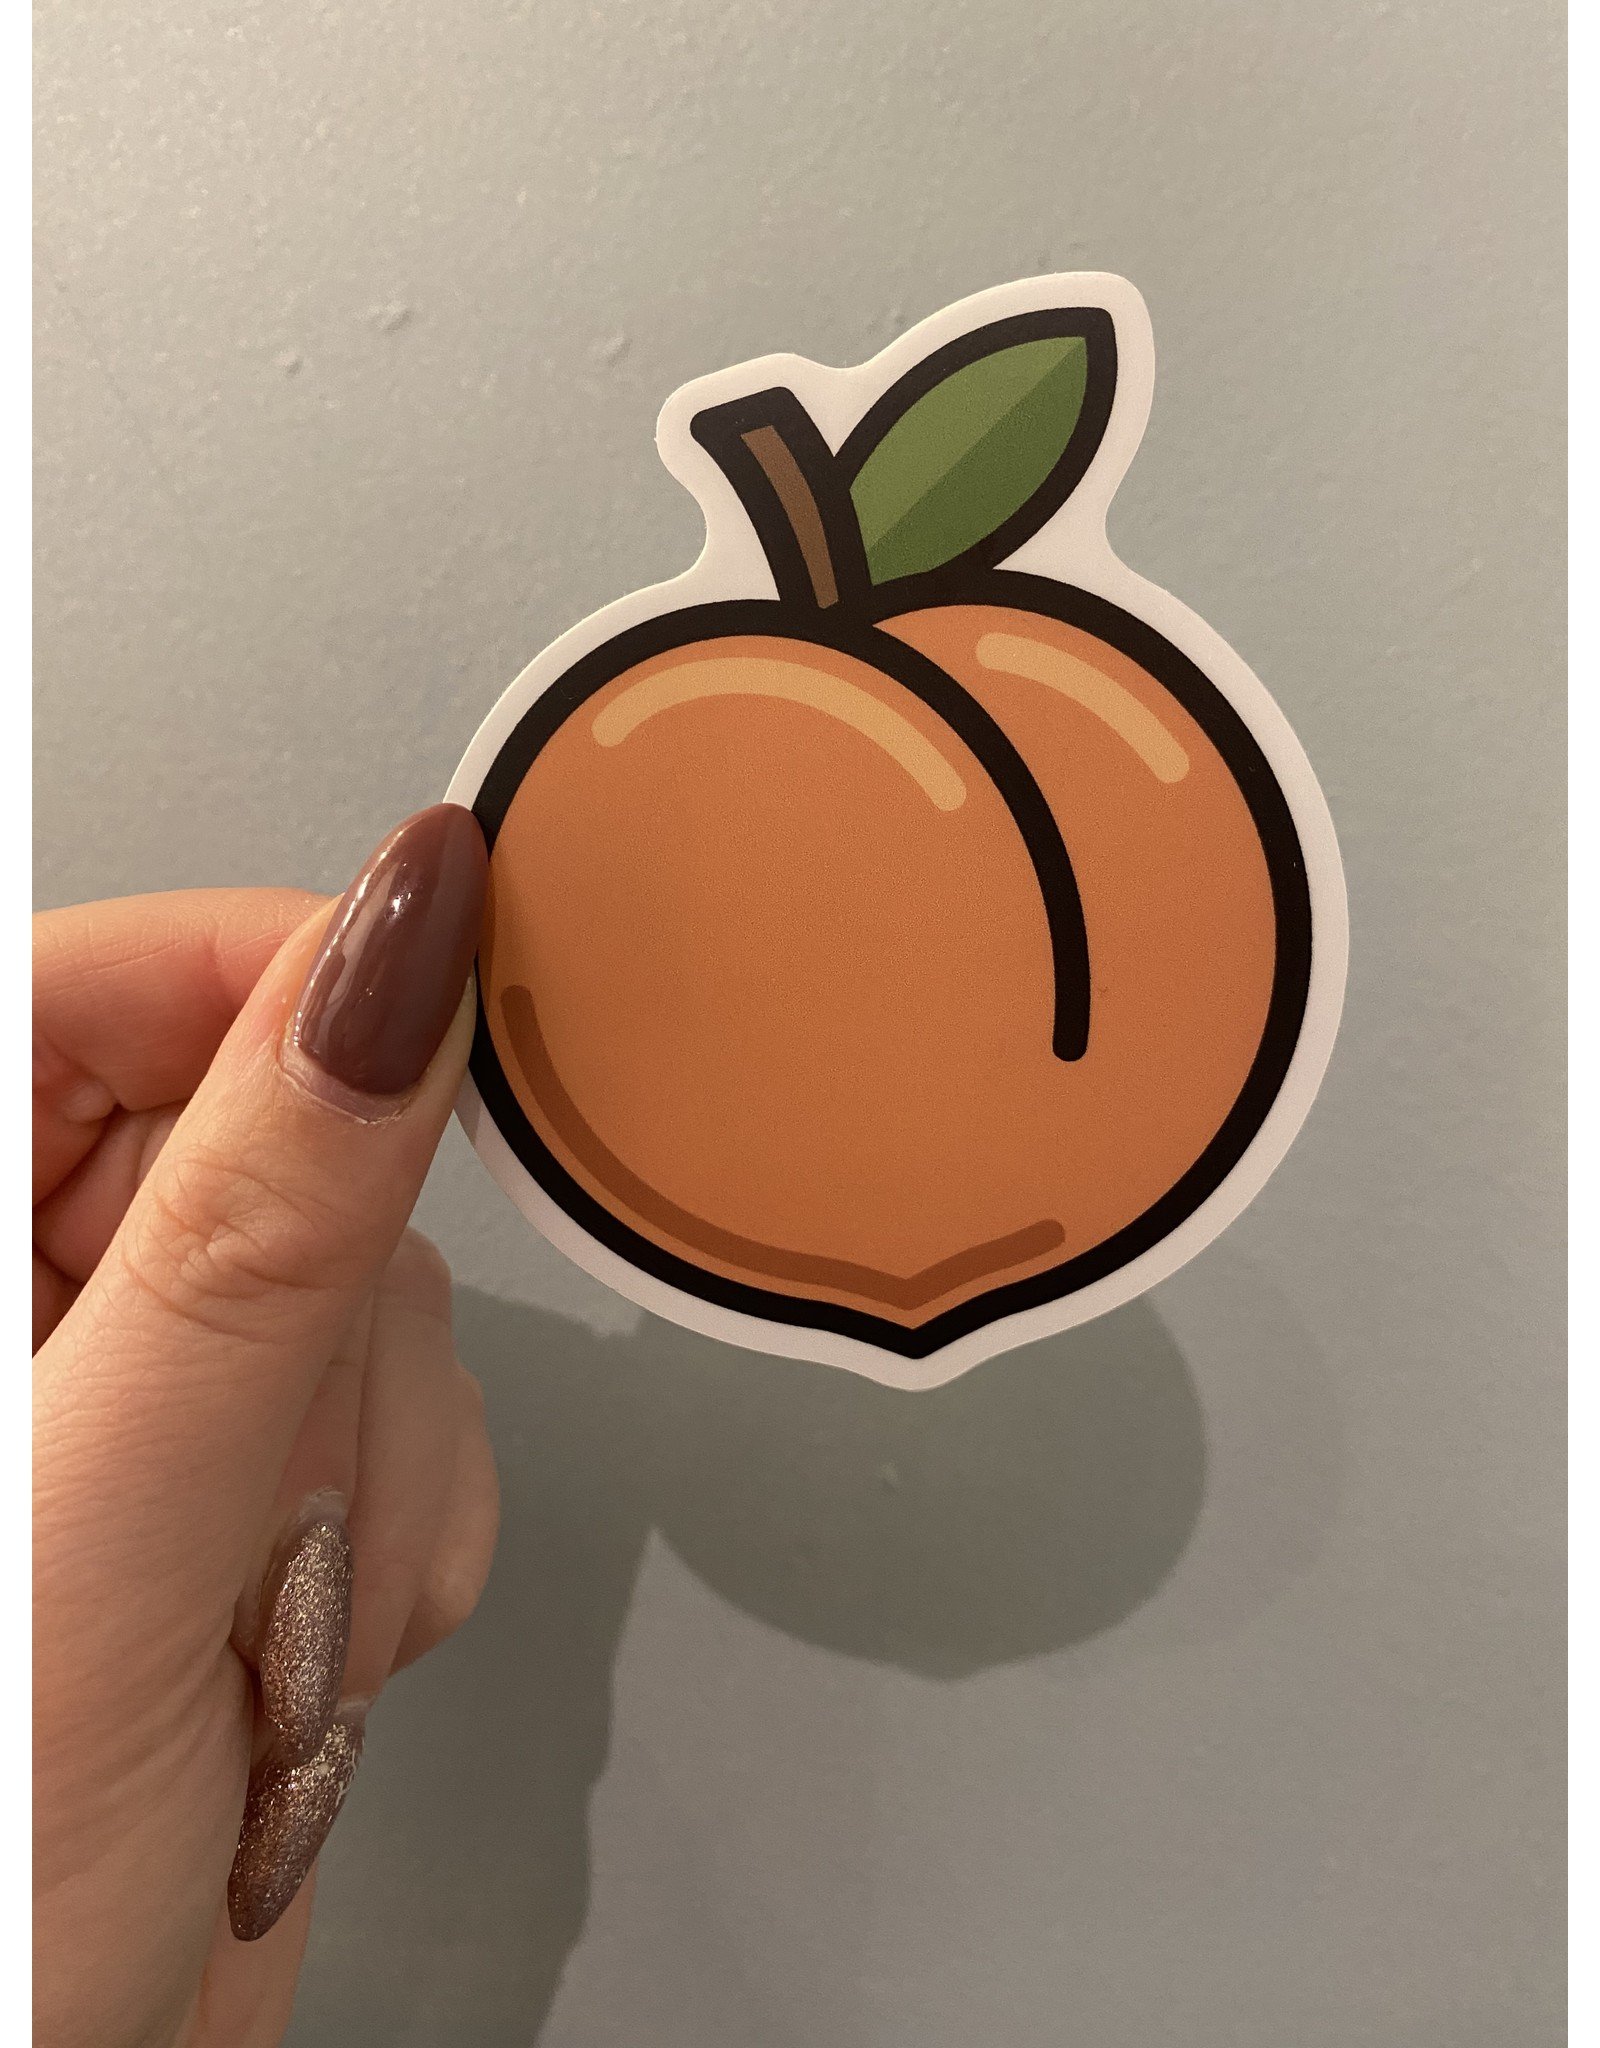 SST - Sticker / Peach